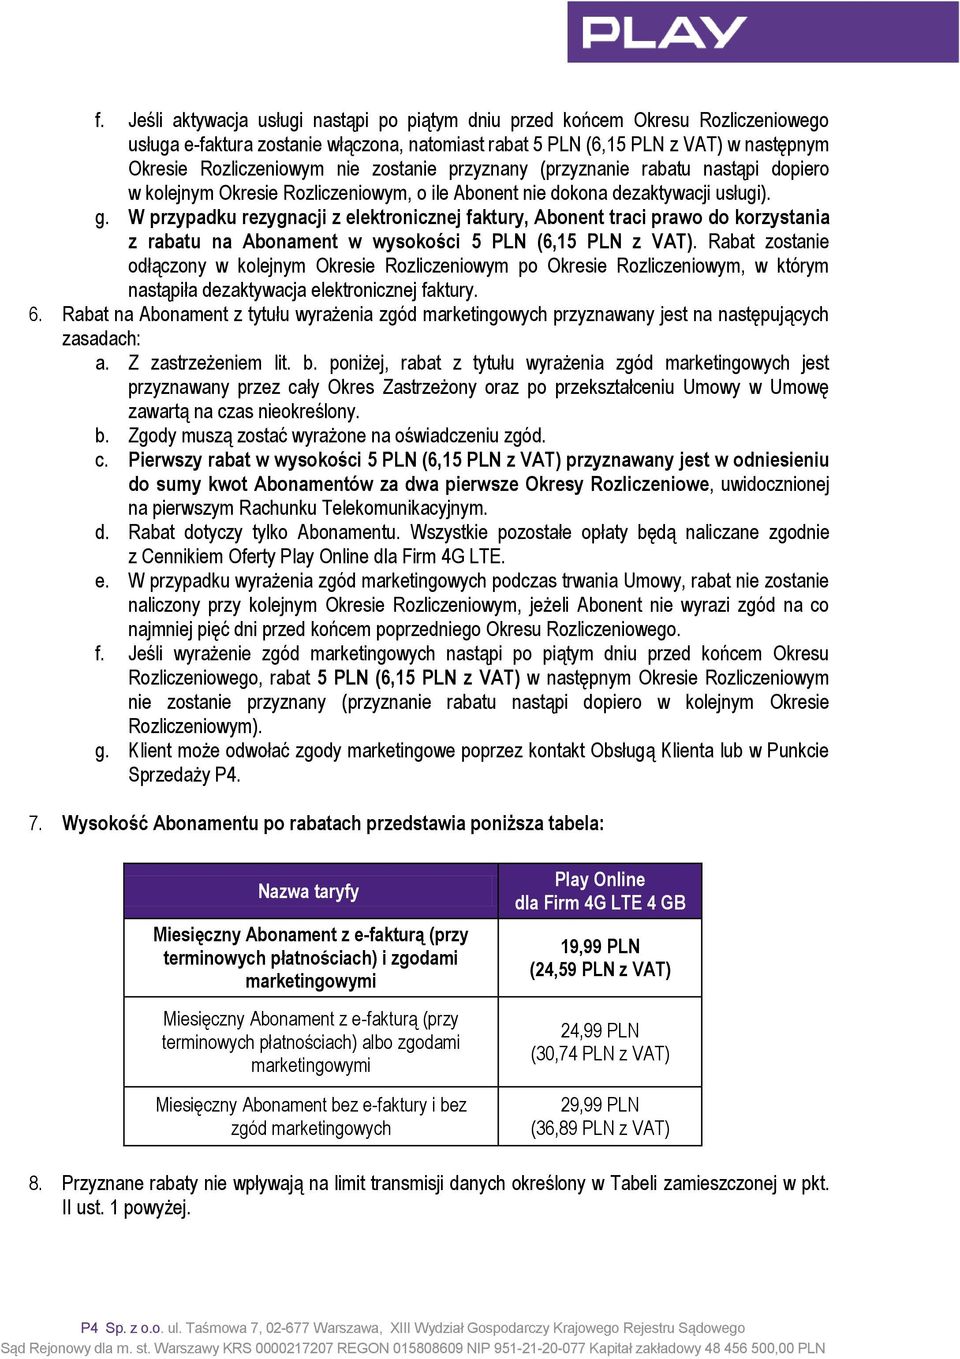 W przypadku rezygnacji z elektronicznej faktury, Abonent traci prawo do korzystania z rabatu na Abonament w wysokości 5 PLN (6,15 PLN z VAT).